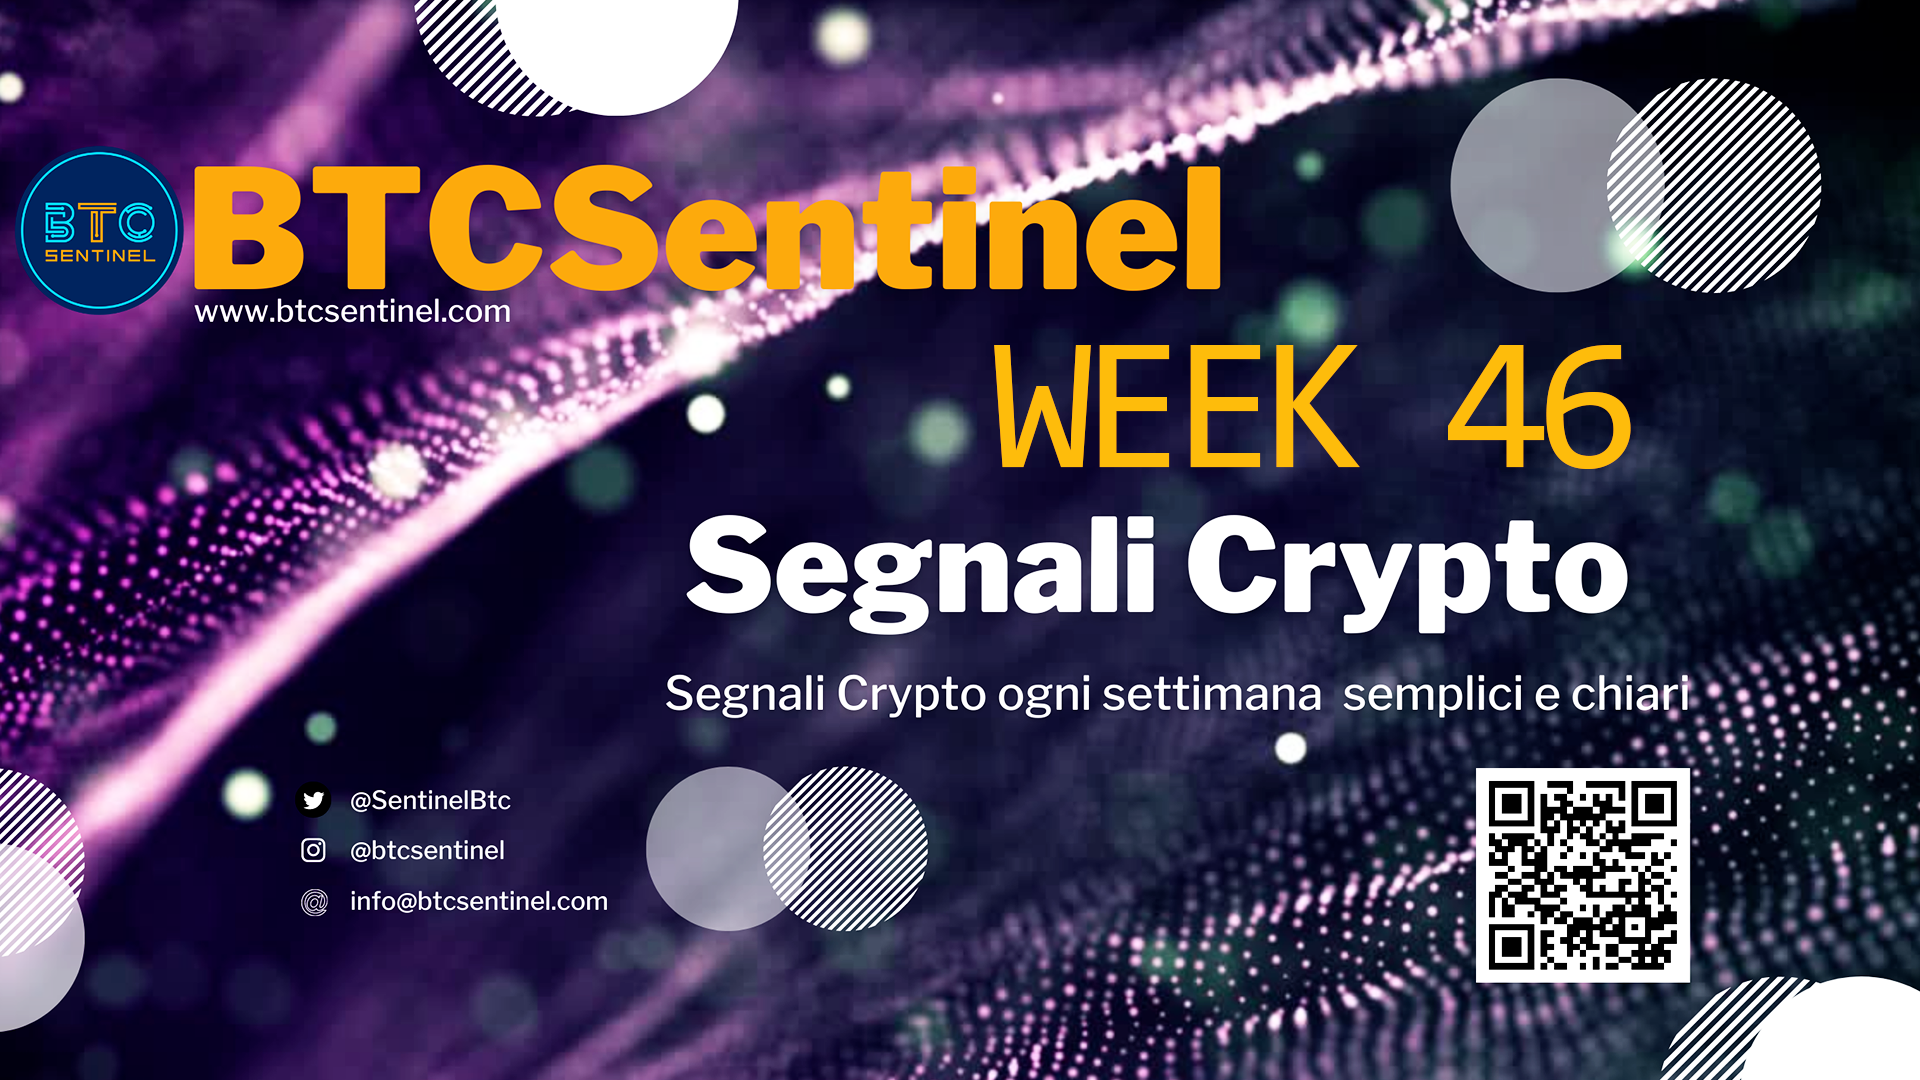 Segnali Crypto Week 46: FTX, Sam Bankman-Fried, Luna Fondation Guard, diffusione crypto nel mondo, OKX, Outflow da CEX da record.